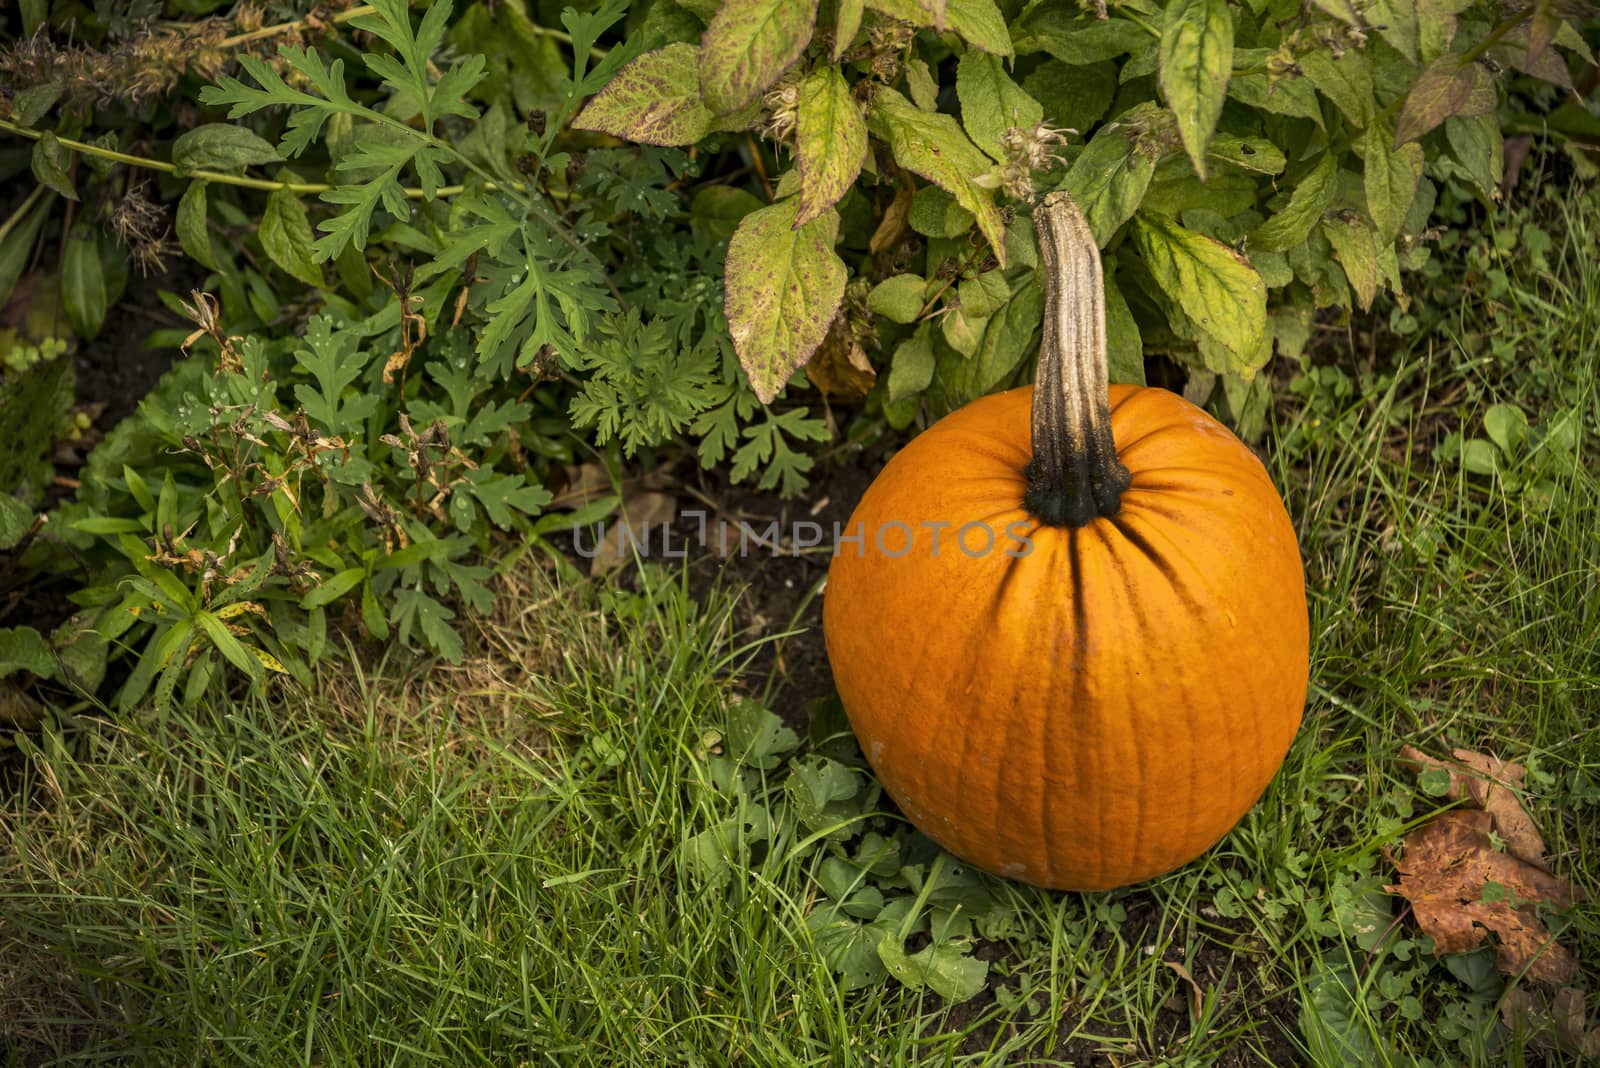 Big orange autumn pumpkin on the grass